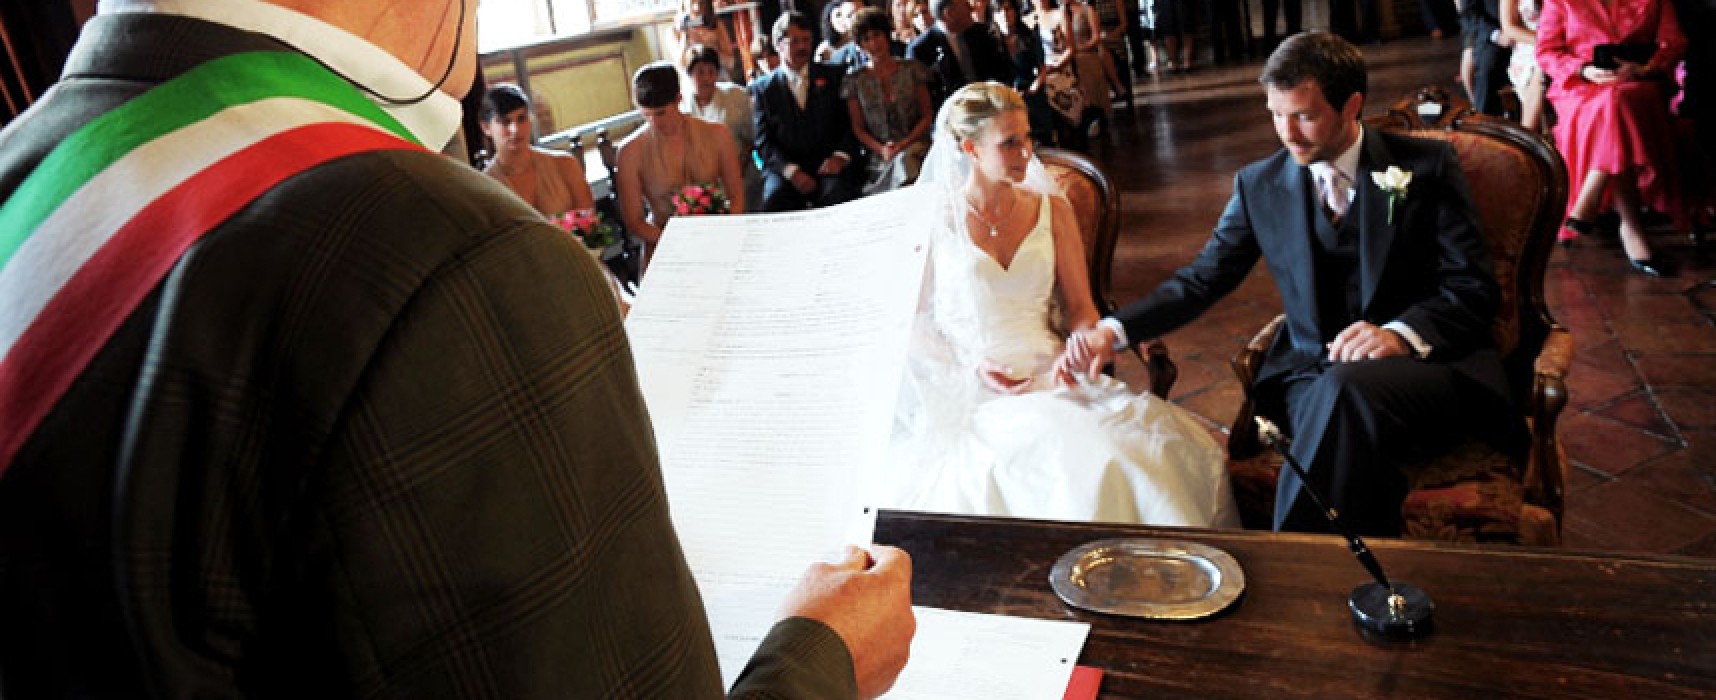 La Giunta comunale approva il tariffario per i matrimoni civili: da 0 a 650 euro